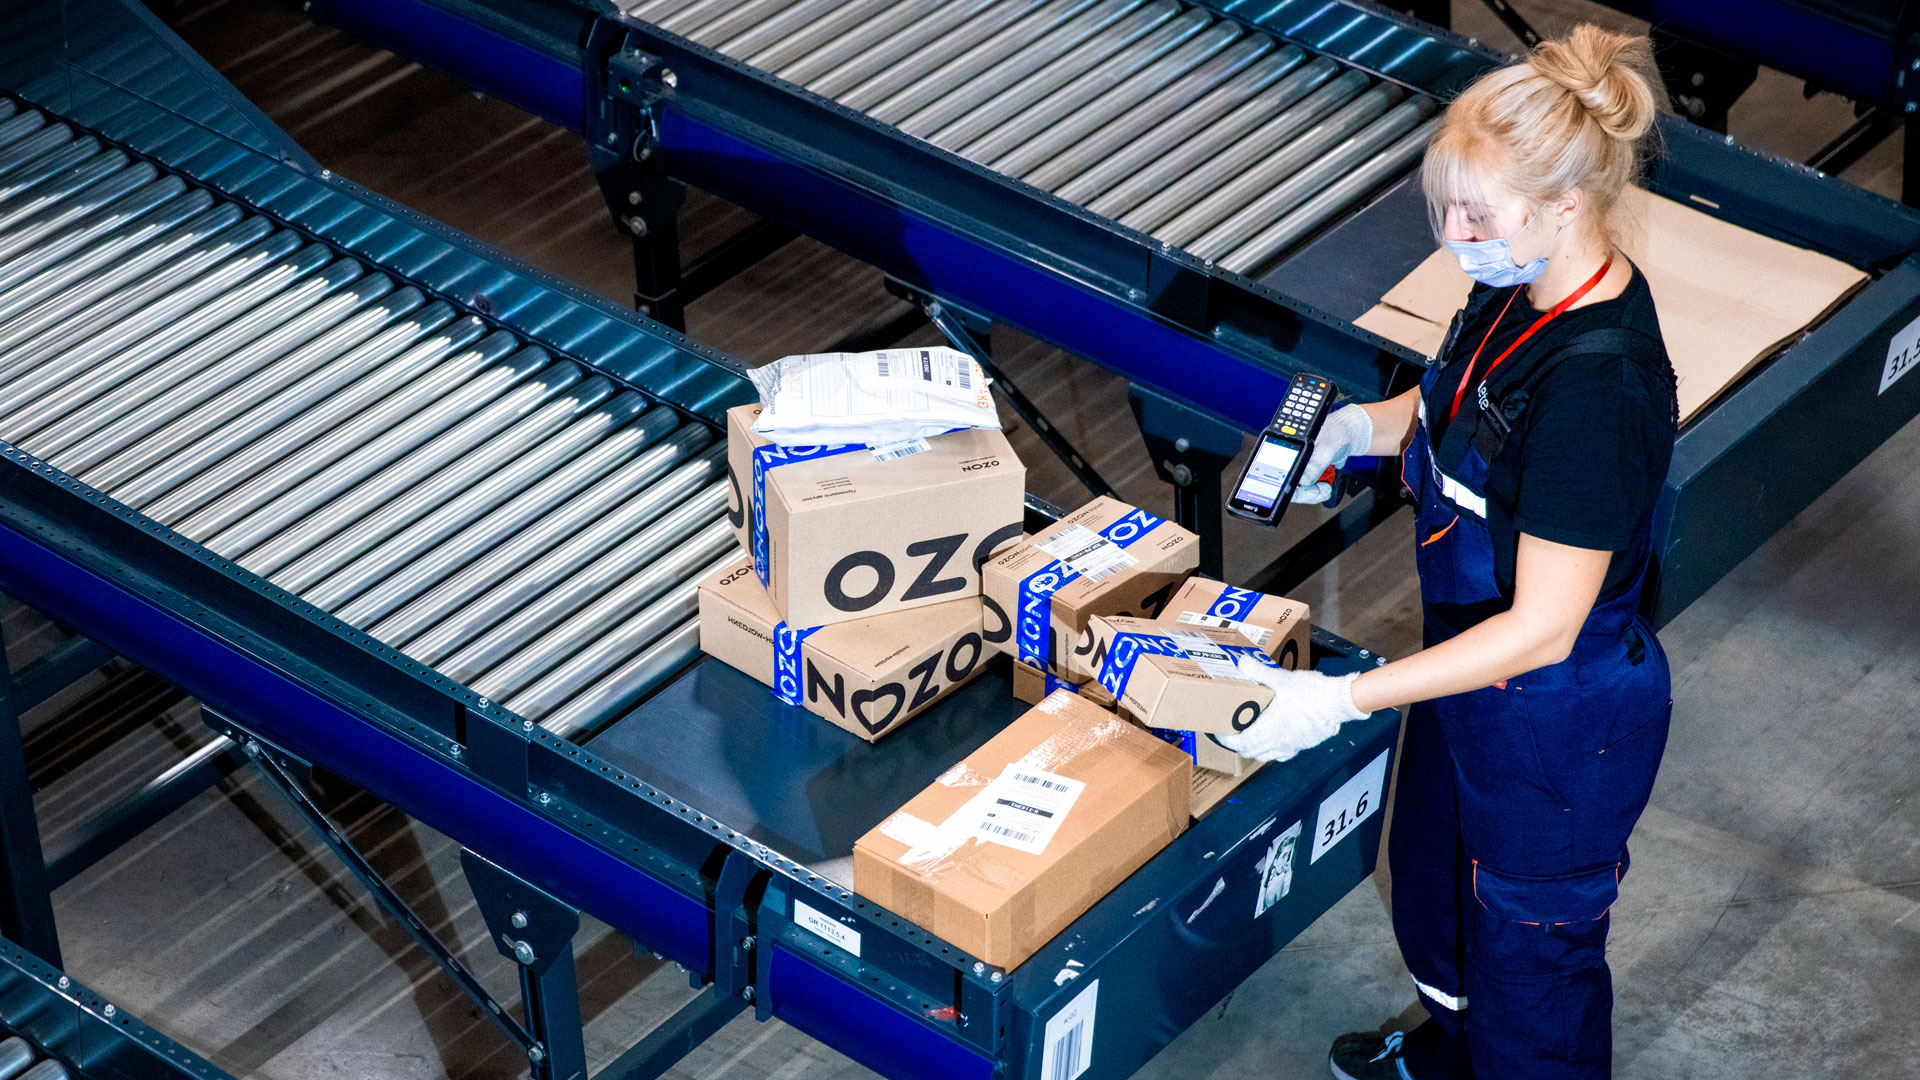 Кейс: как ozon нашел 700 сотрудников склада: планы и вызовы 2020 года |  Retail.ru